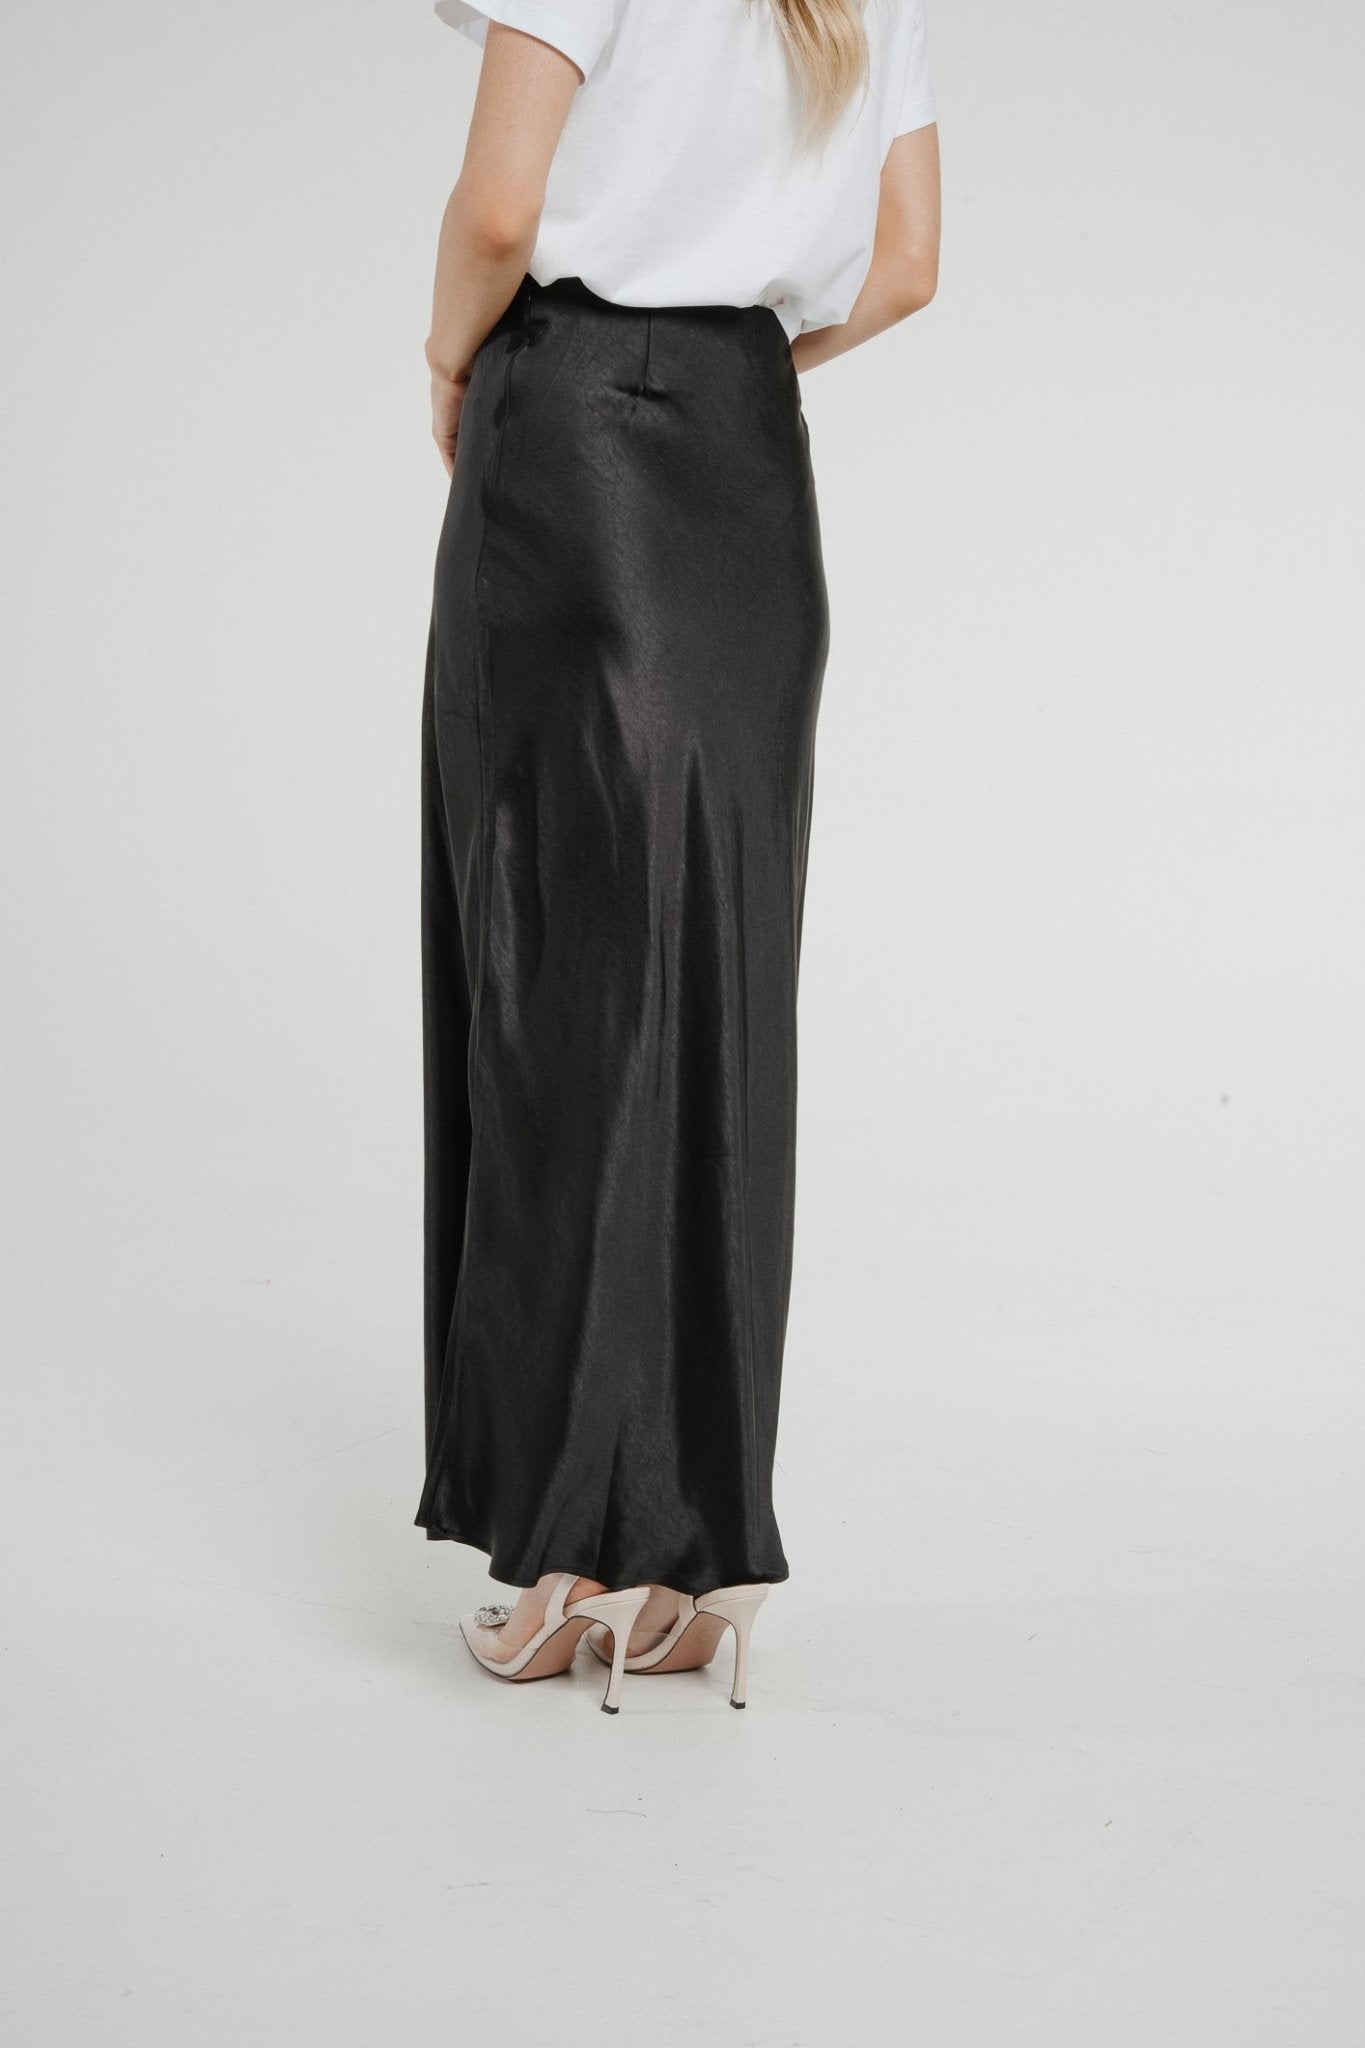 Jane Longline Satin Skirt In Black - The Walk in Wardrobe